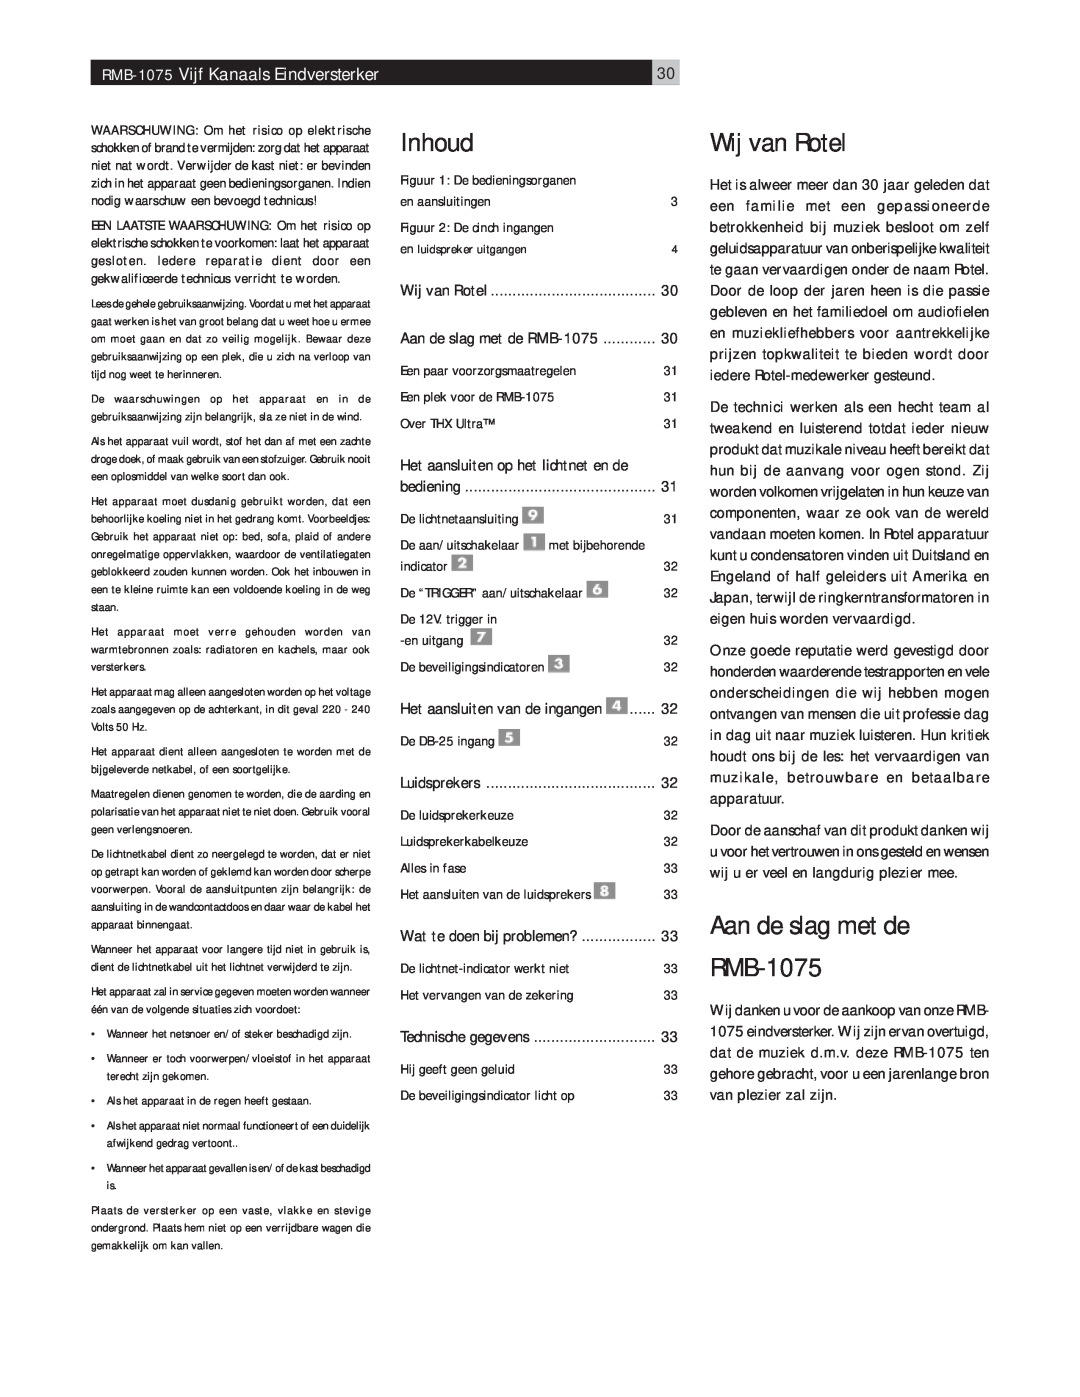 Rotel owner manual Inhoud, Wij van Rotel, Aan de slag met de, RMB-1075 Vijf Kanaals Eindversterker 